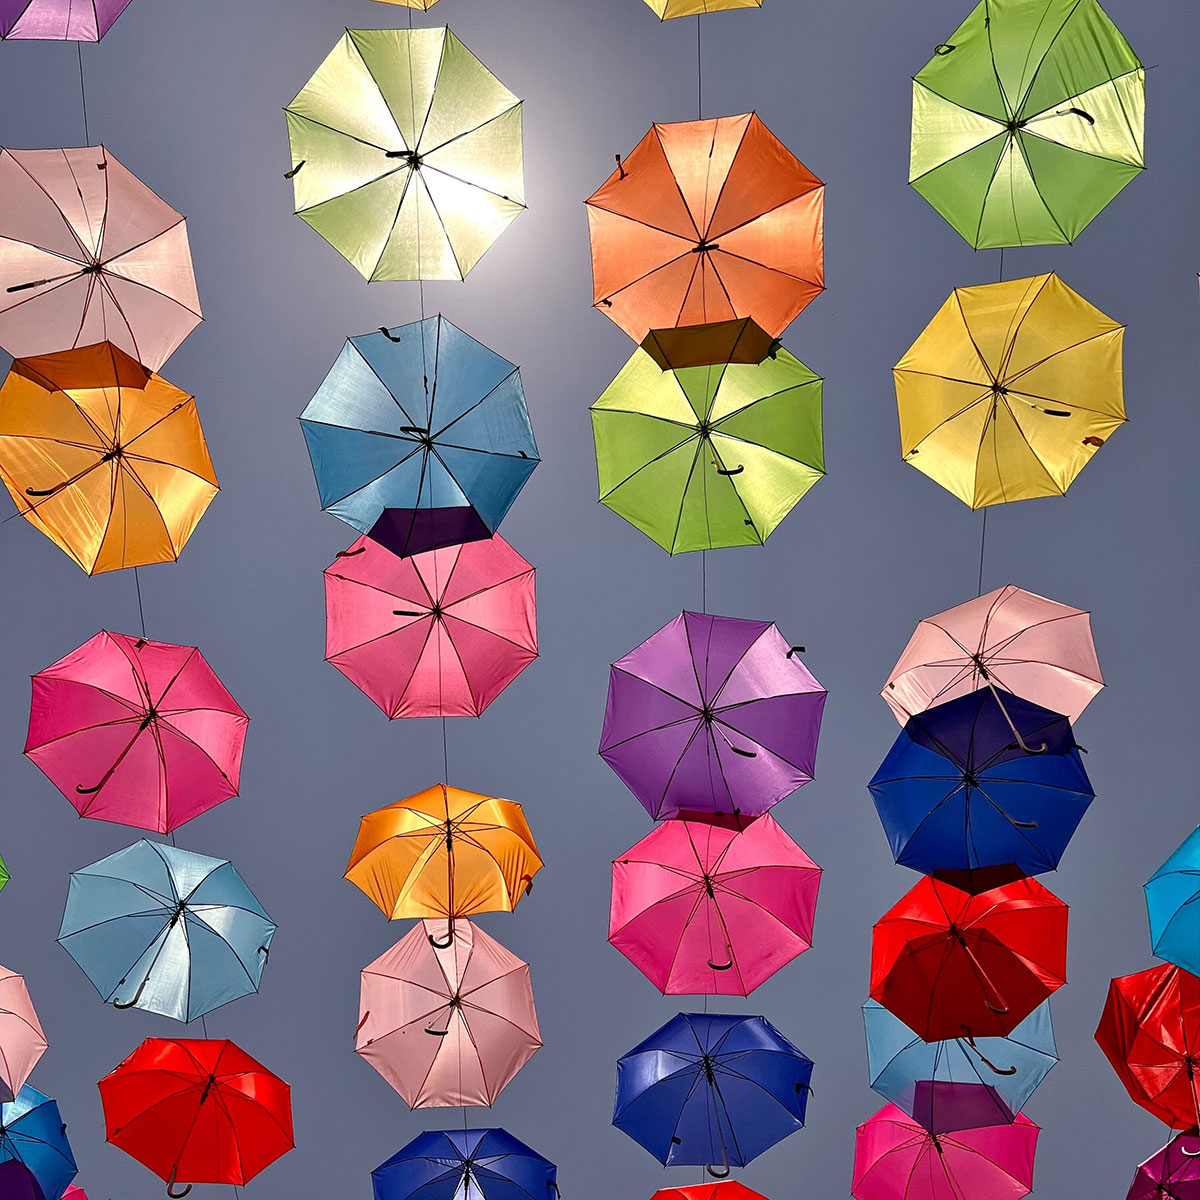 different colored umbrellas